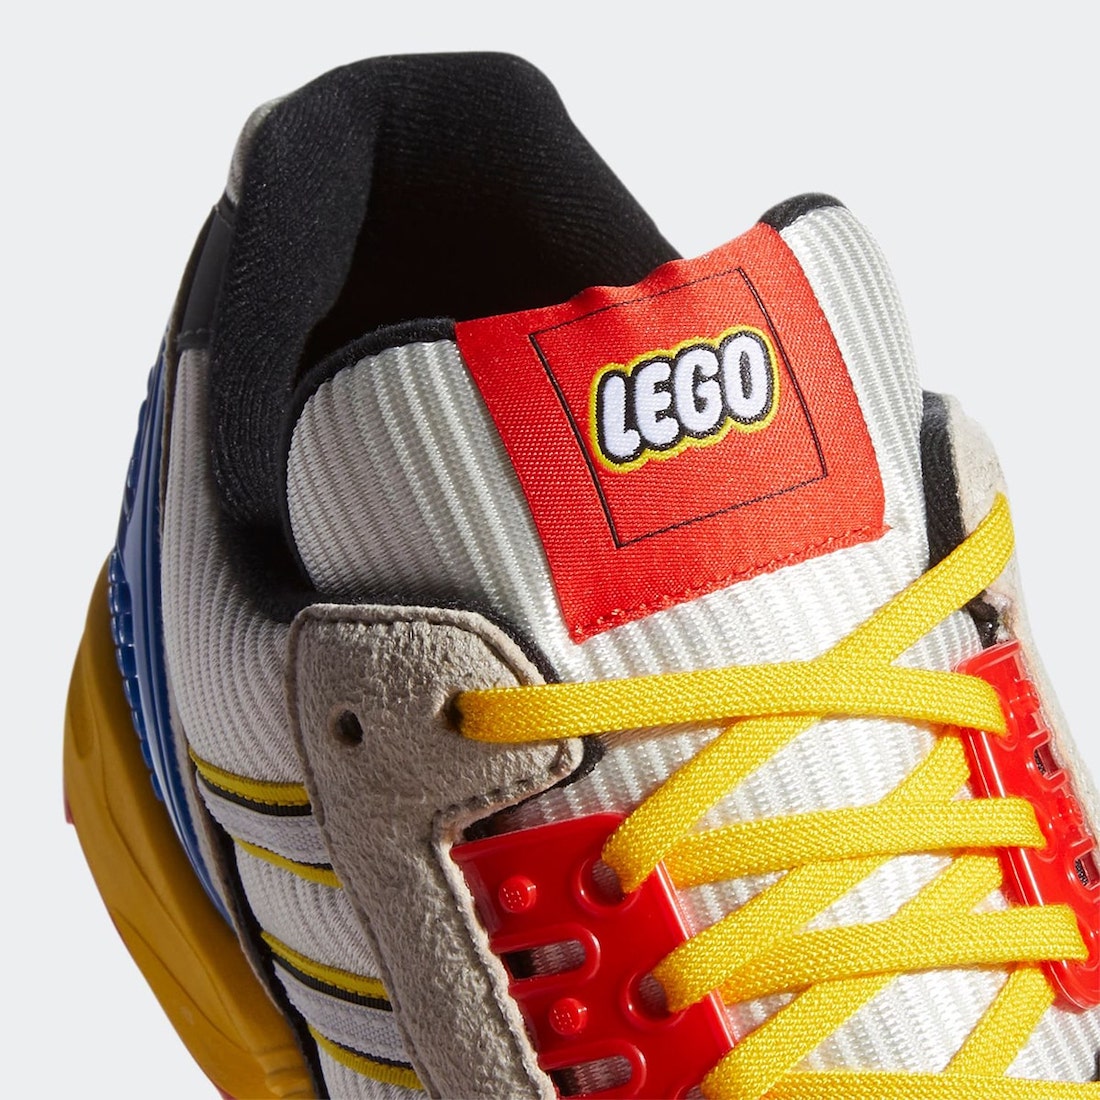 ¡Qué belleza! Adidas se une con LEGO para traer unos tenis que te regresarán a tu infancia